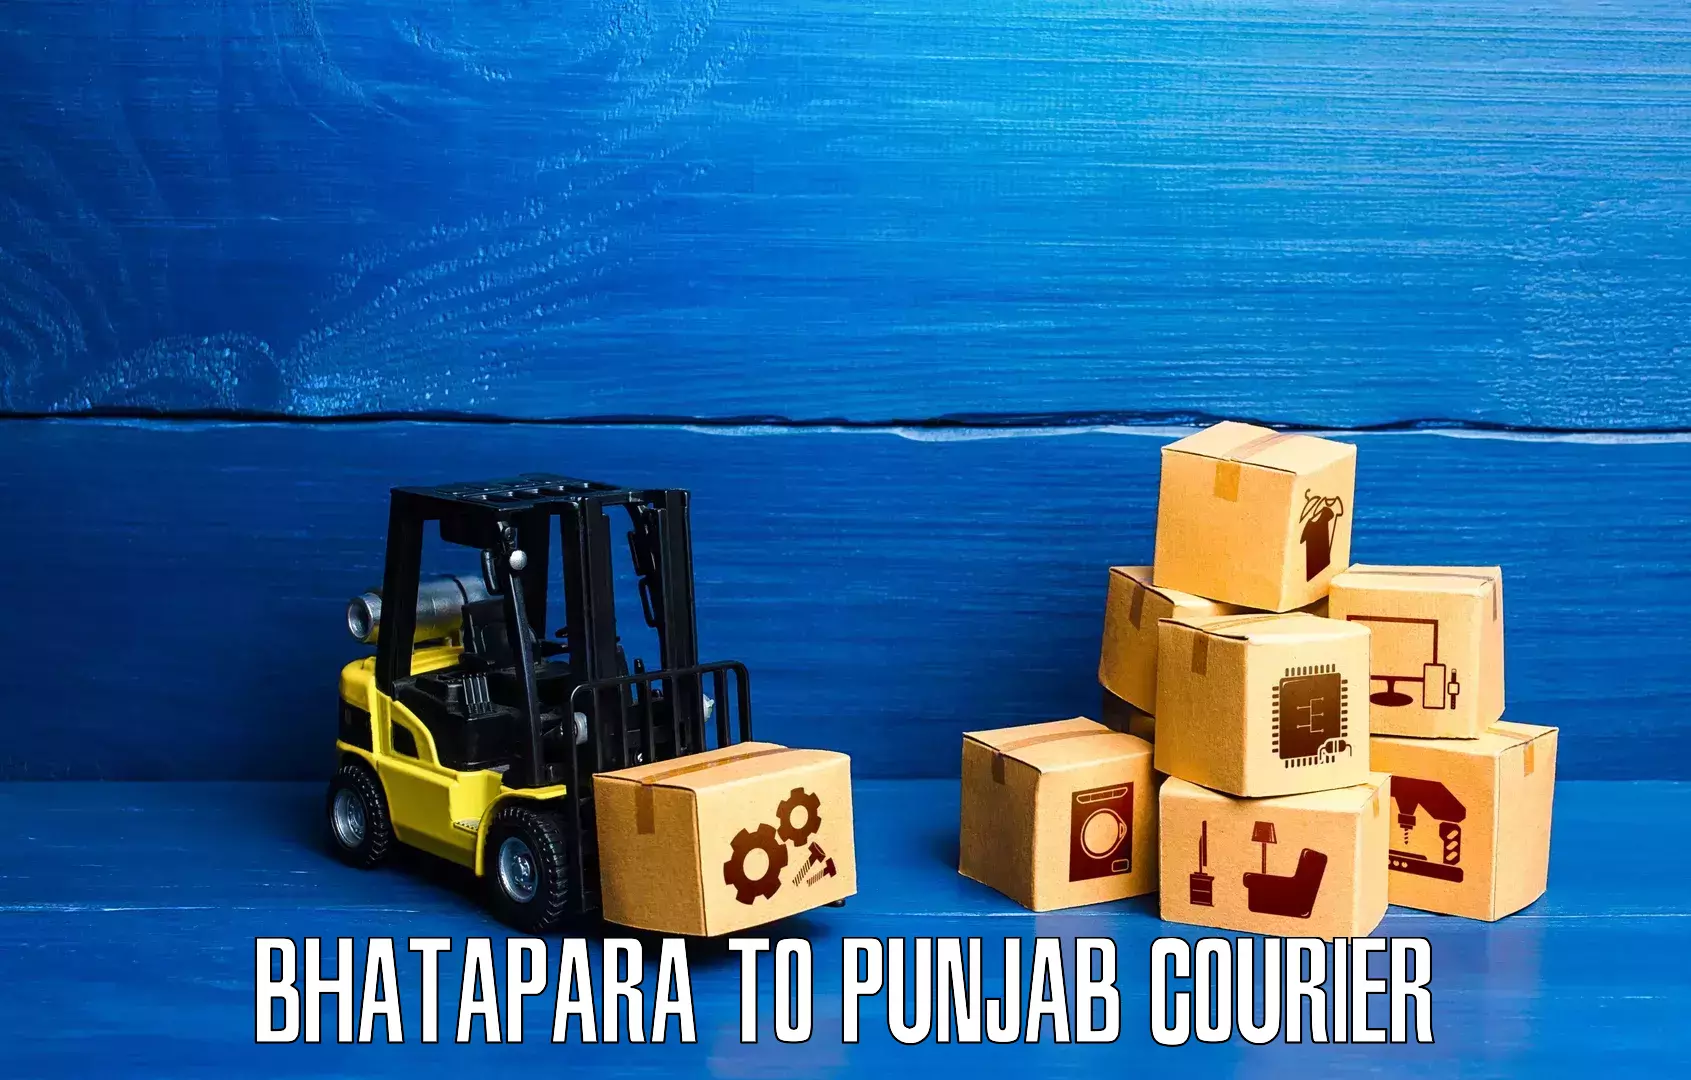 International courier networks Bhatapara to Gurdaspur